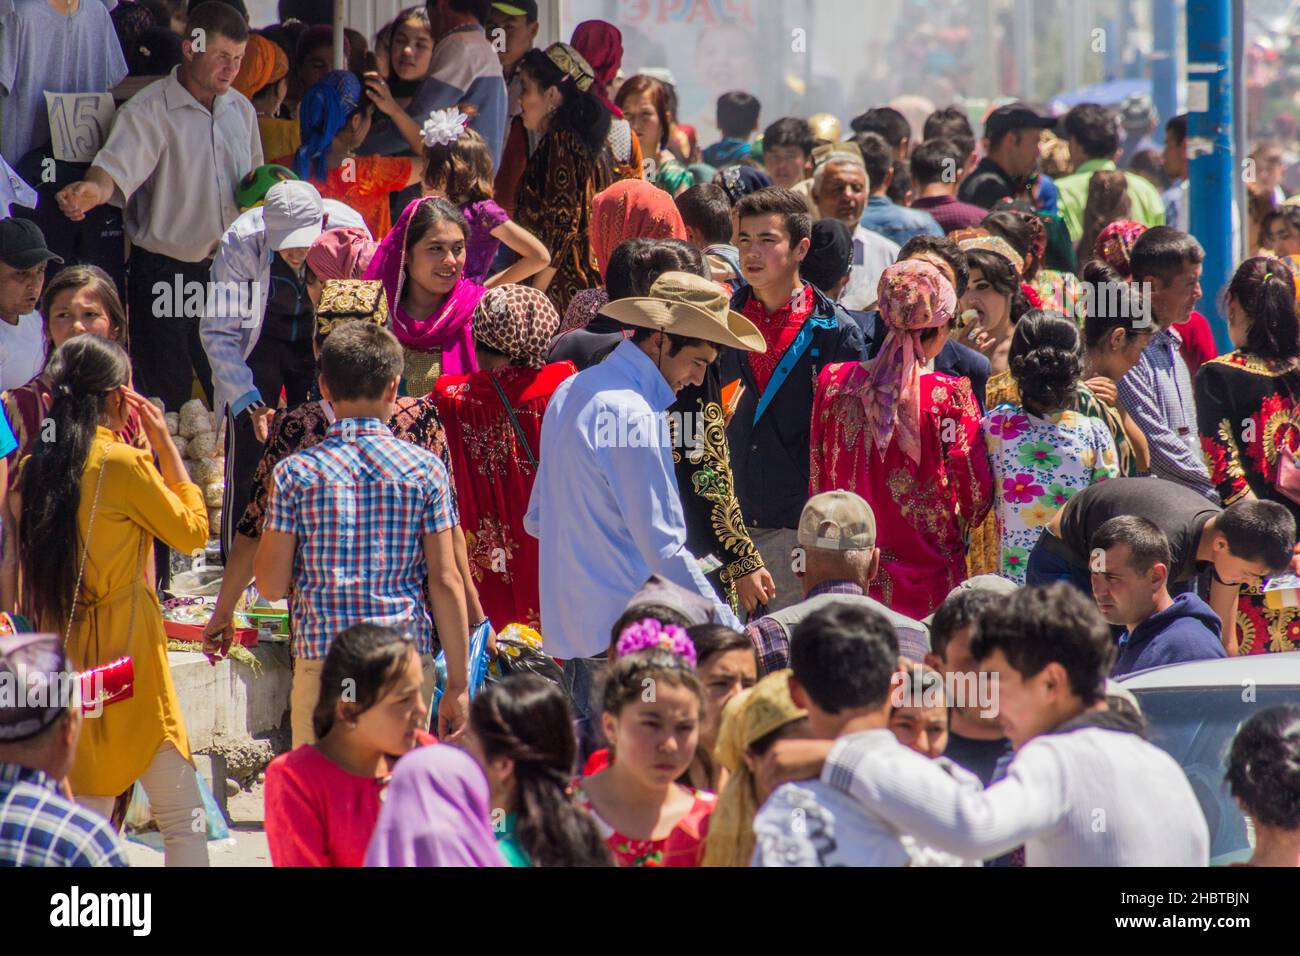 PENJIKENT, TADSCHIKISTAN - 9. MAI 2018: Menschen auf einer Straße vor dem Basar in Penjikent, Tadschikistan Stockfoto